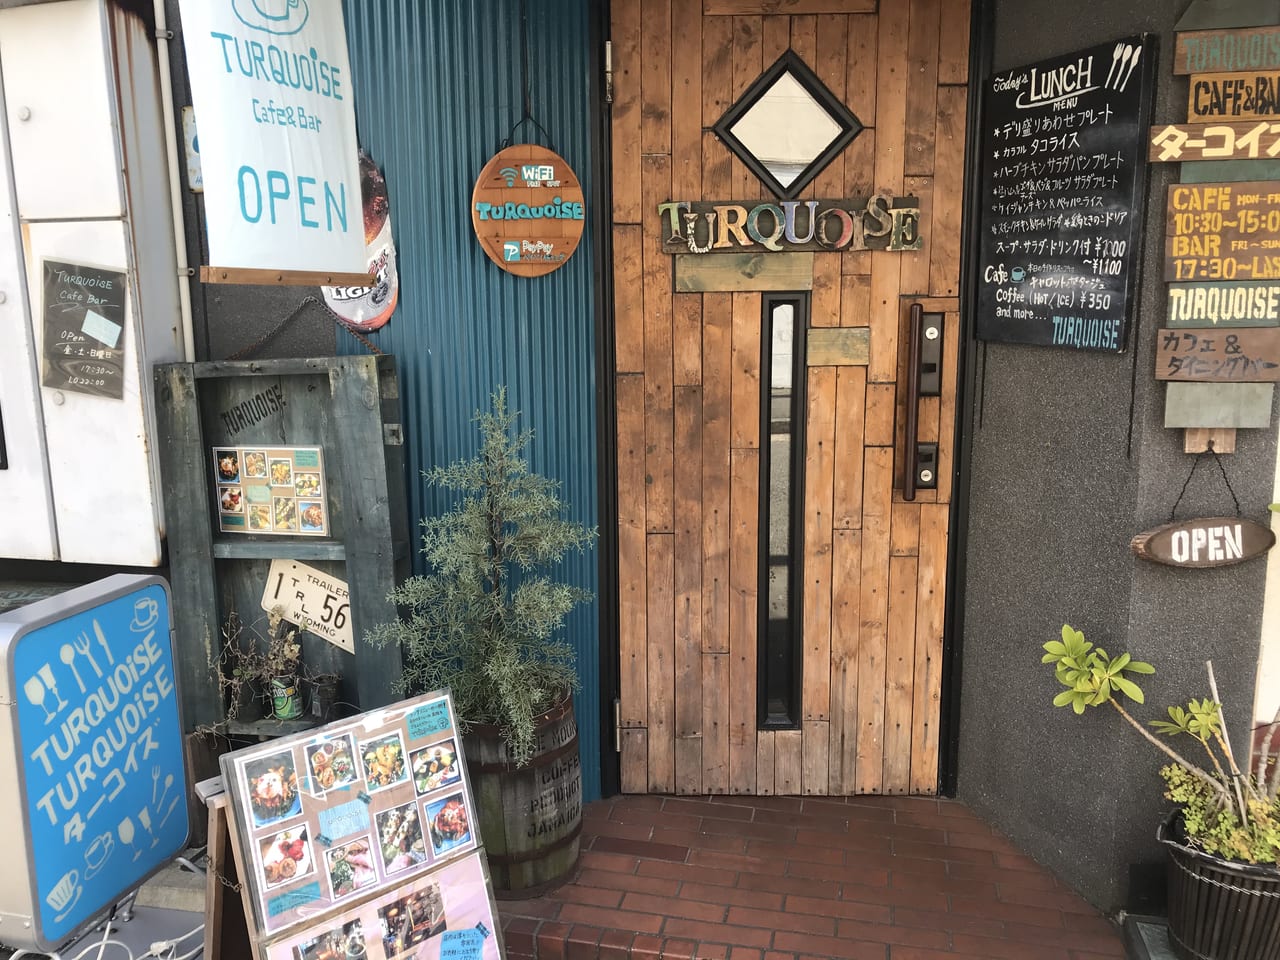 横須賀市 隠れ家の様なカフェ Cafe Barターコイズ は 豊富なランチメニューが人気のお店でした 号外net 横須賀市 三浦市